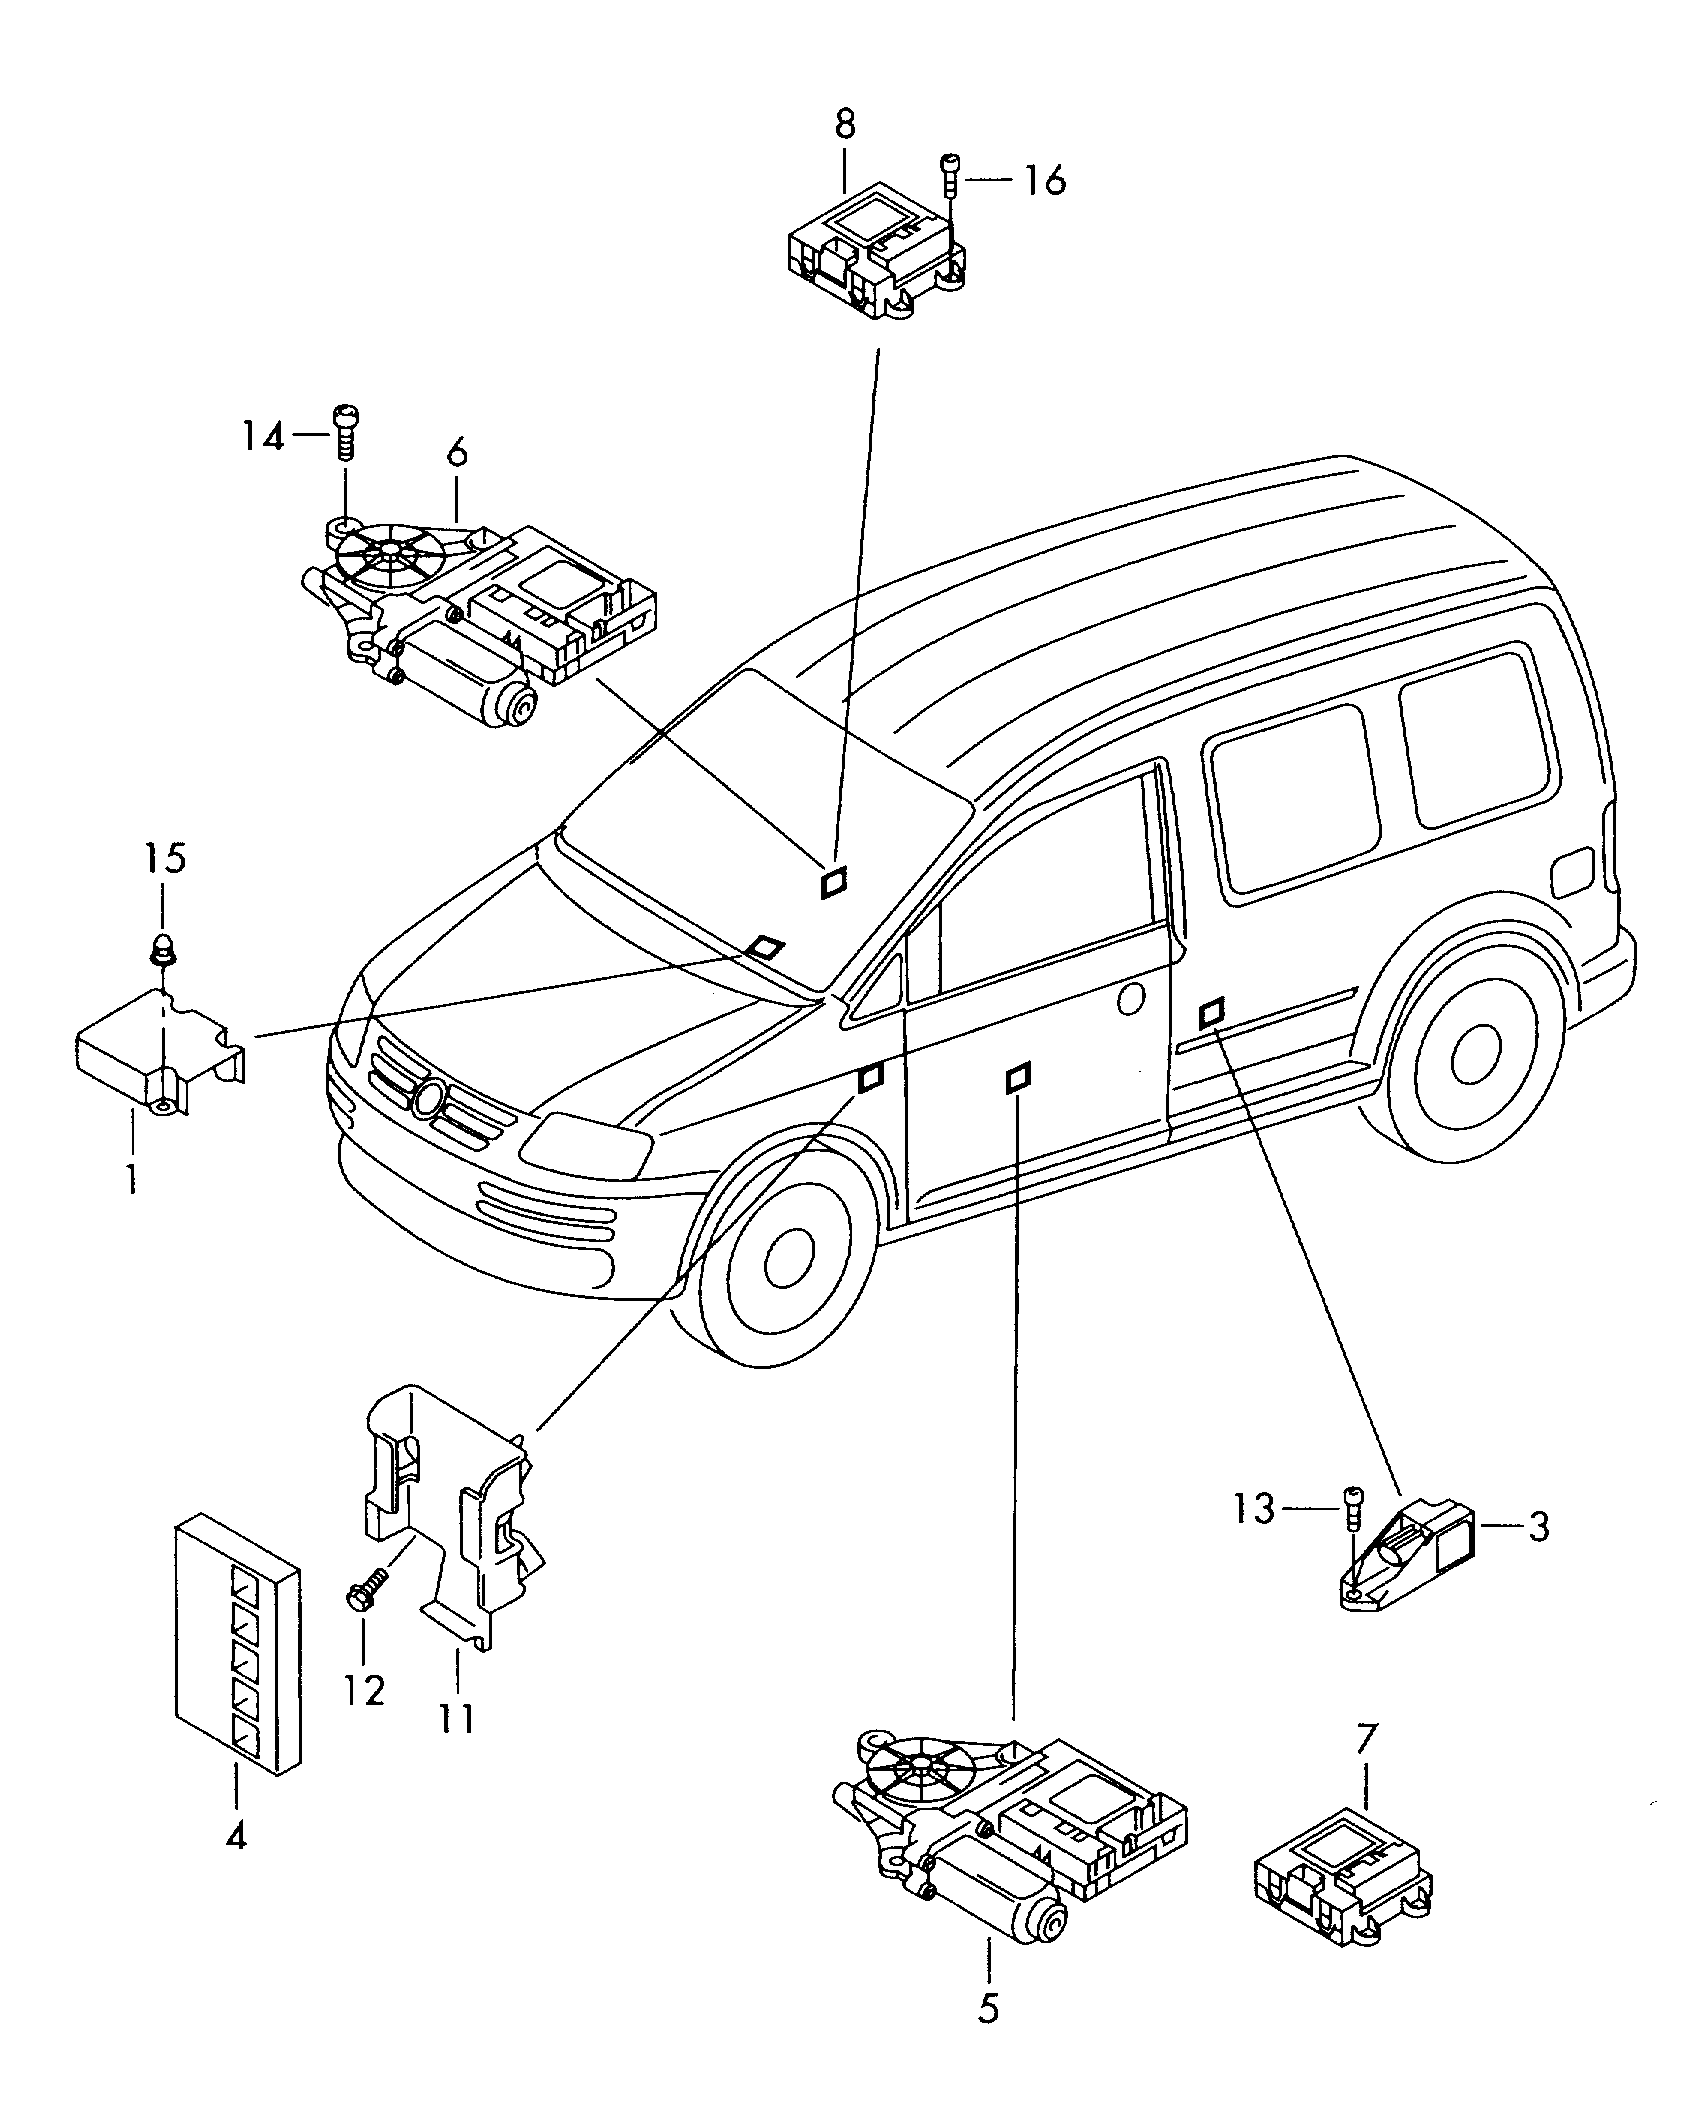 Individual parts  - Caddy - cad